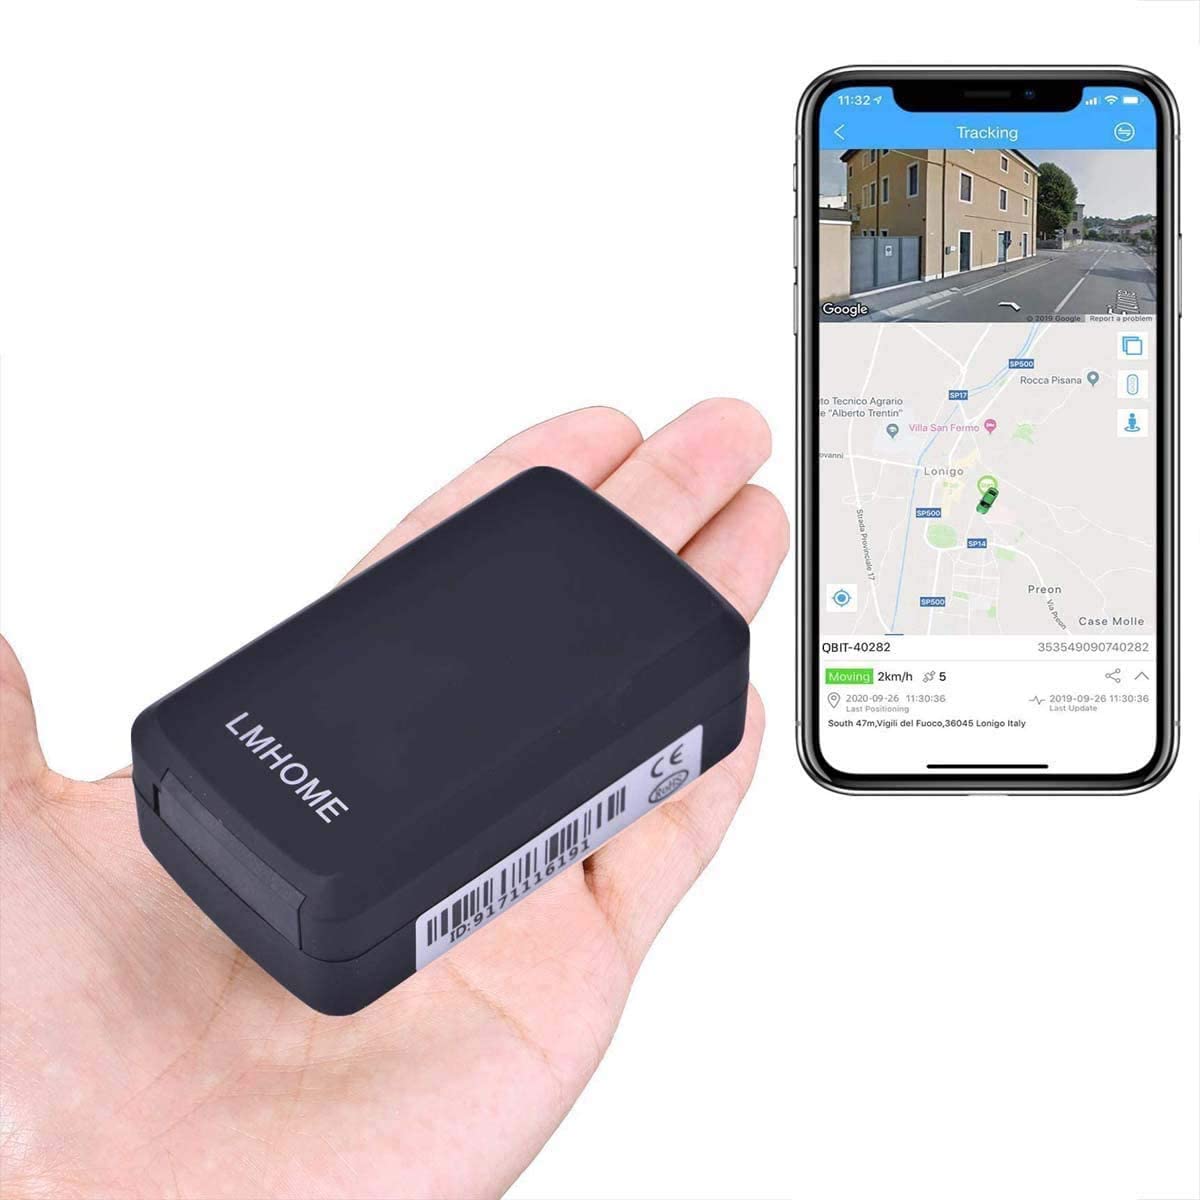 LM002B GPS Tracker Car LMHOME 2G Monitoraggio in tempo reale Monitoraggio vocale Localizzatore GPS 60 giorni Standby impermeabile APP Web gratuita